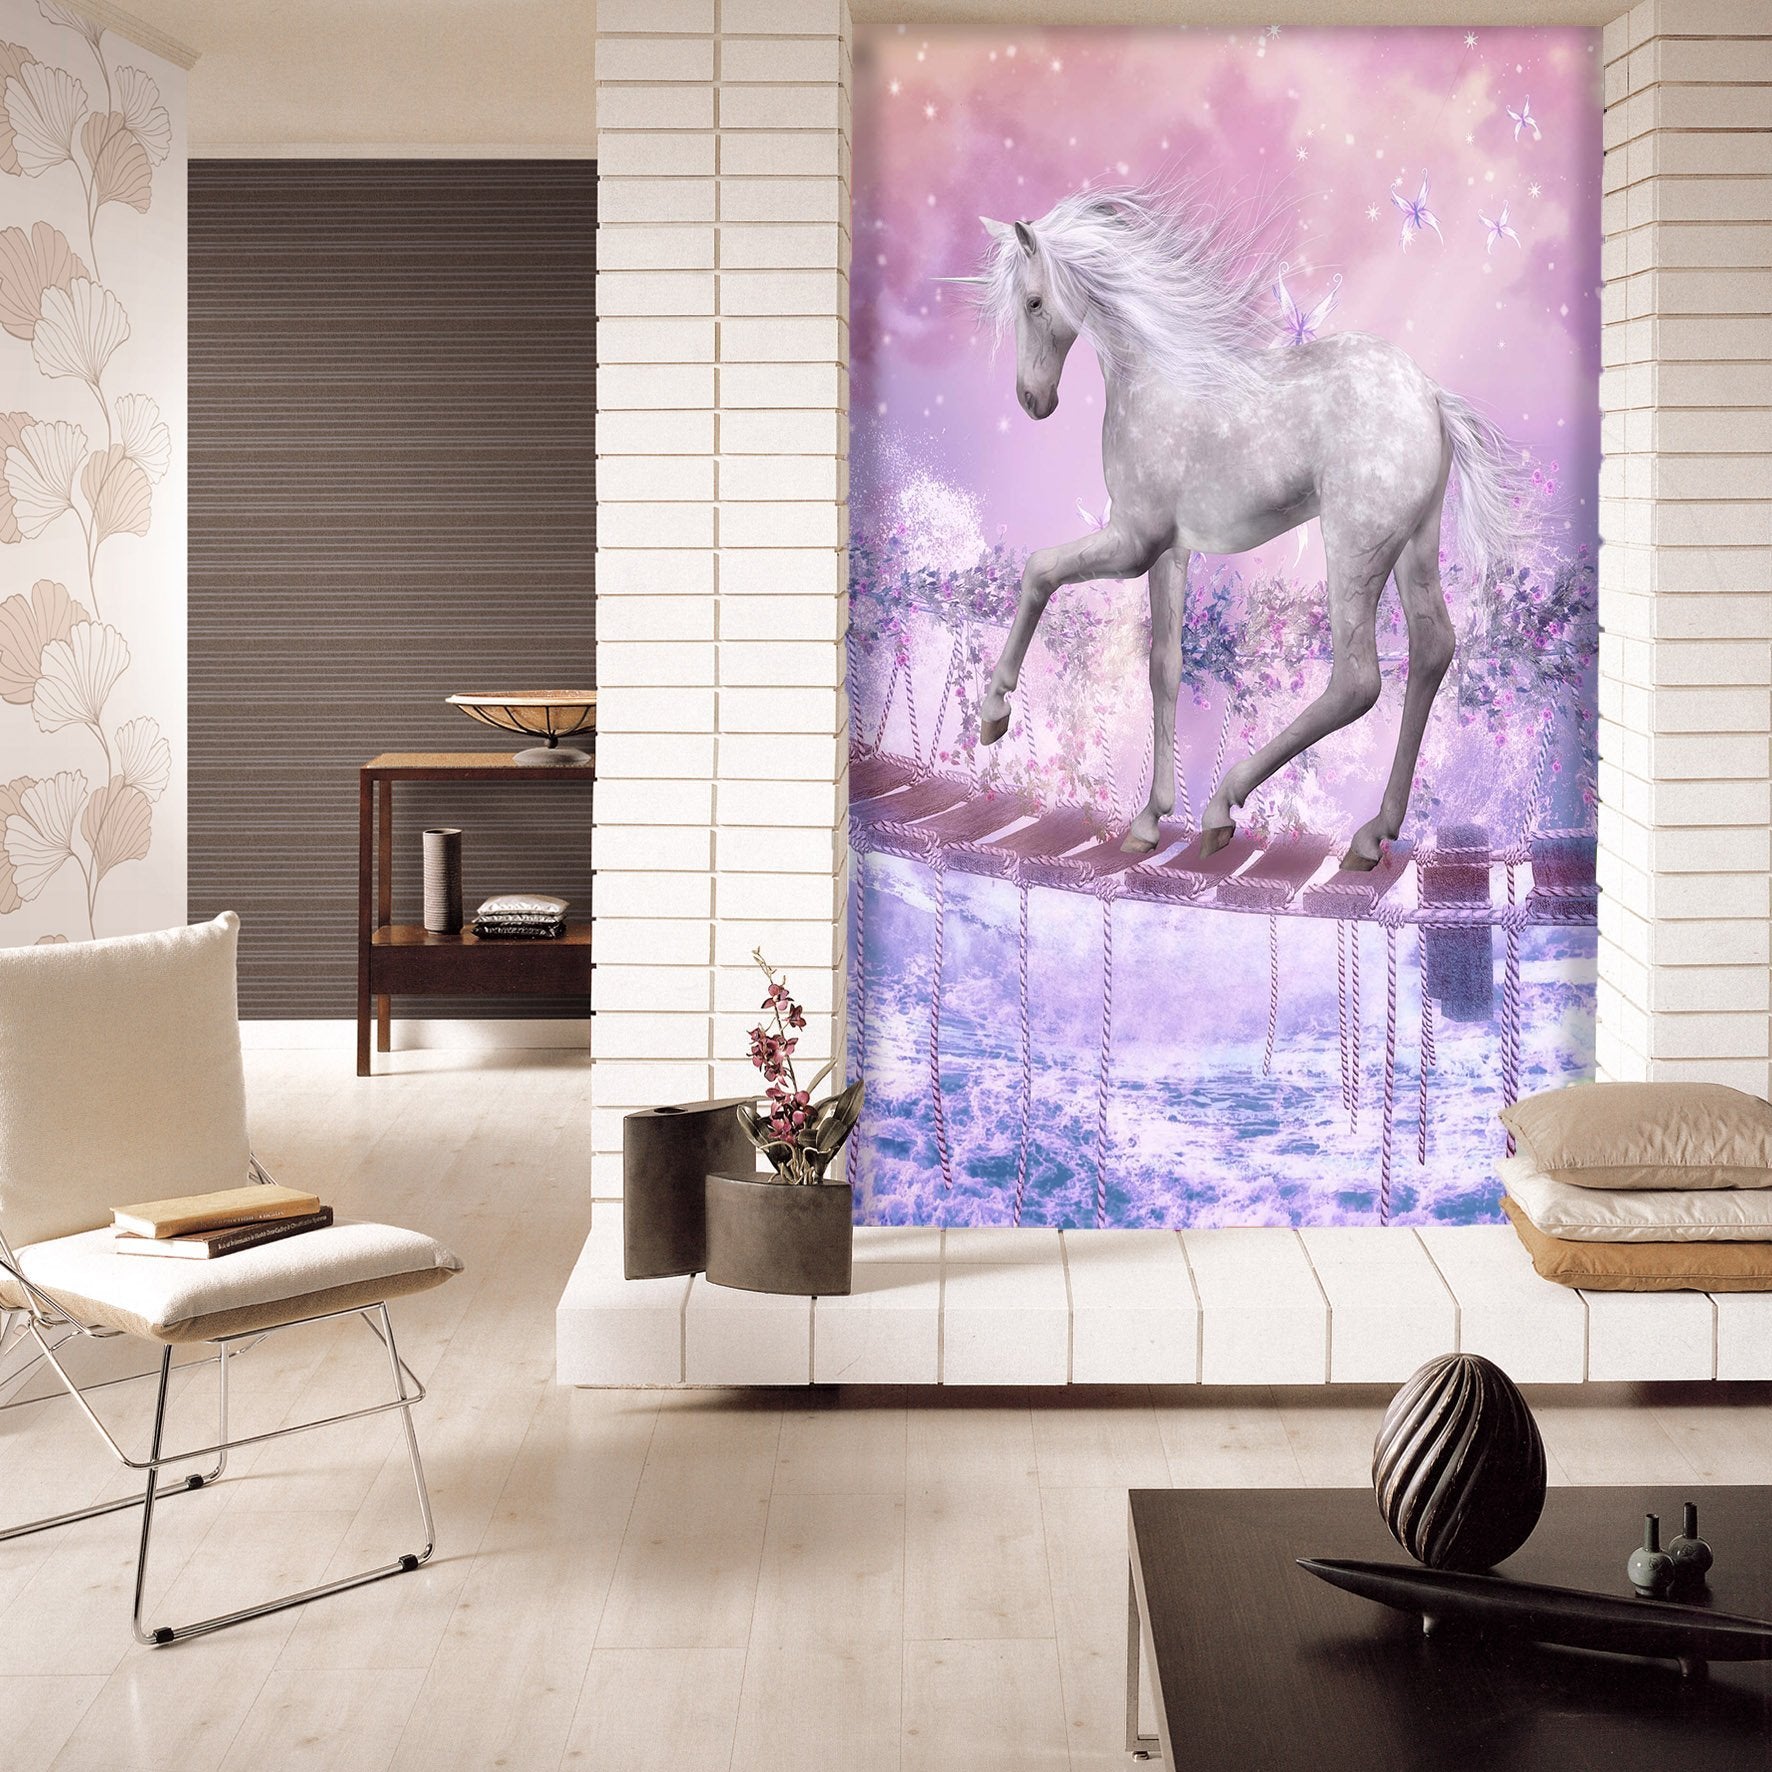 3D Handsome Horse 788 Wallpaper AJ Wallpaper 